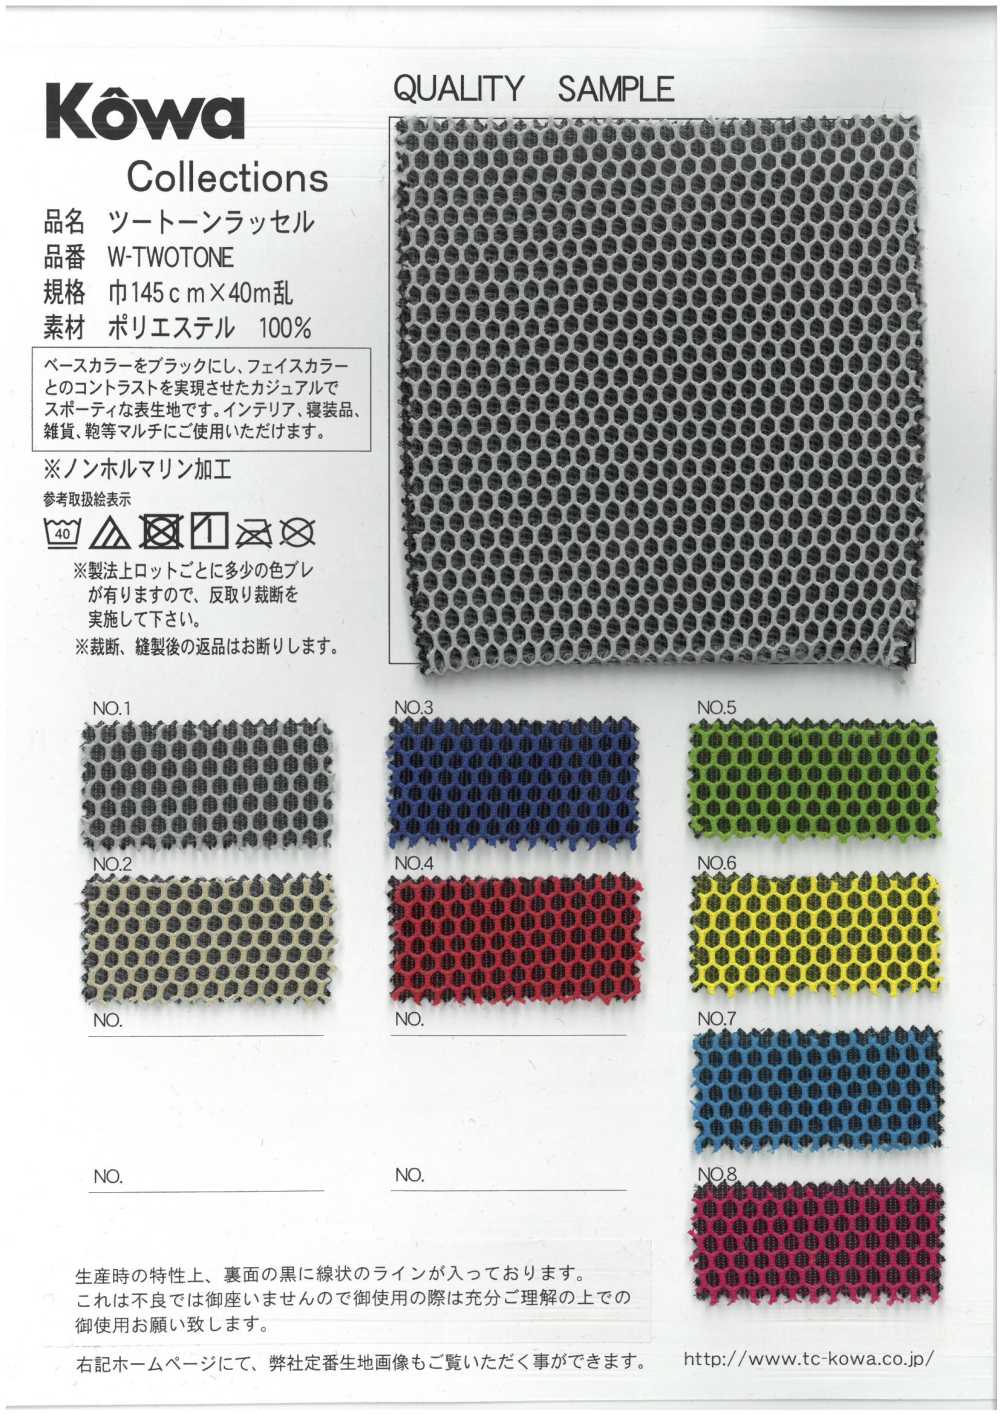 W-TWOTONE Zweifarbige Raschel[Textilgewebe] Yukikazu